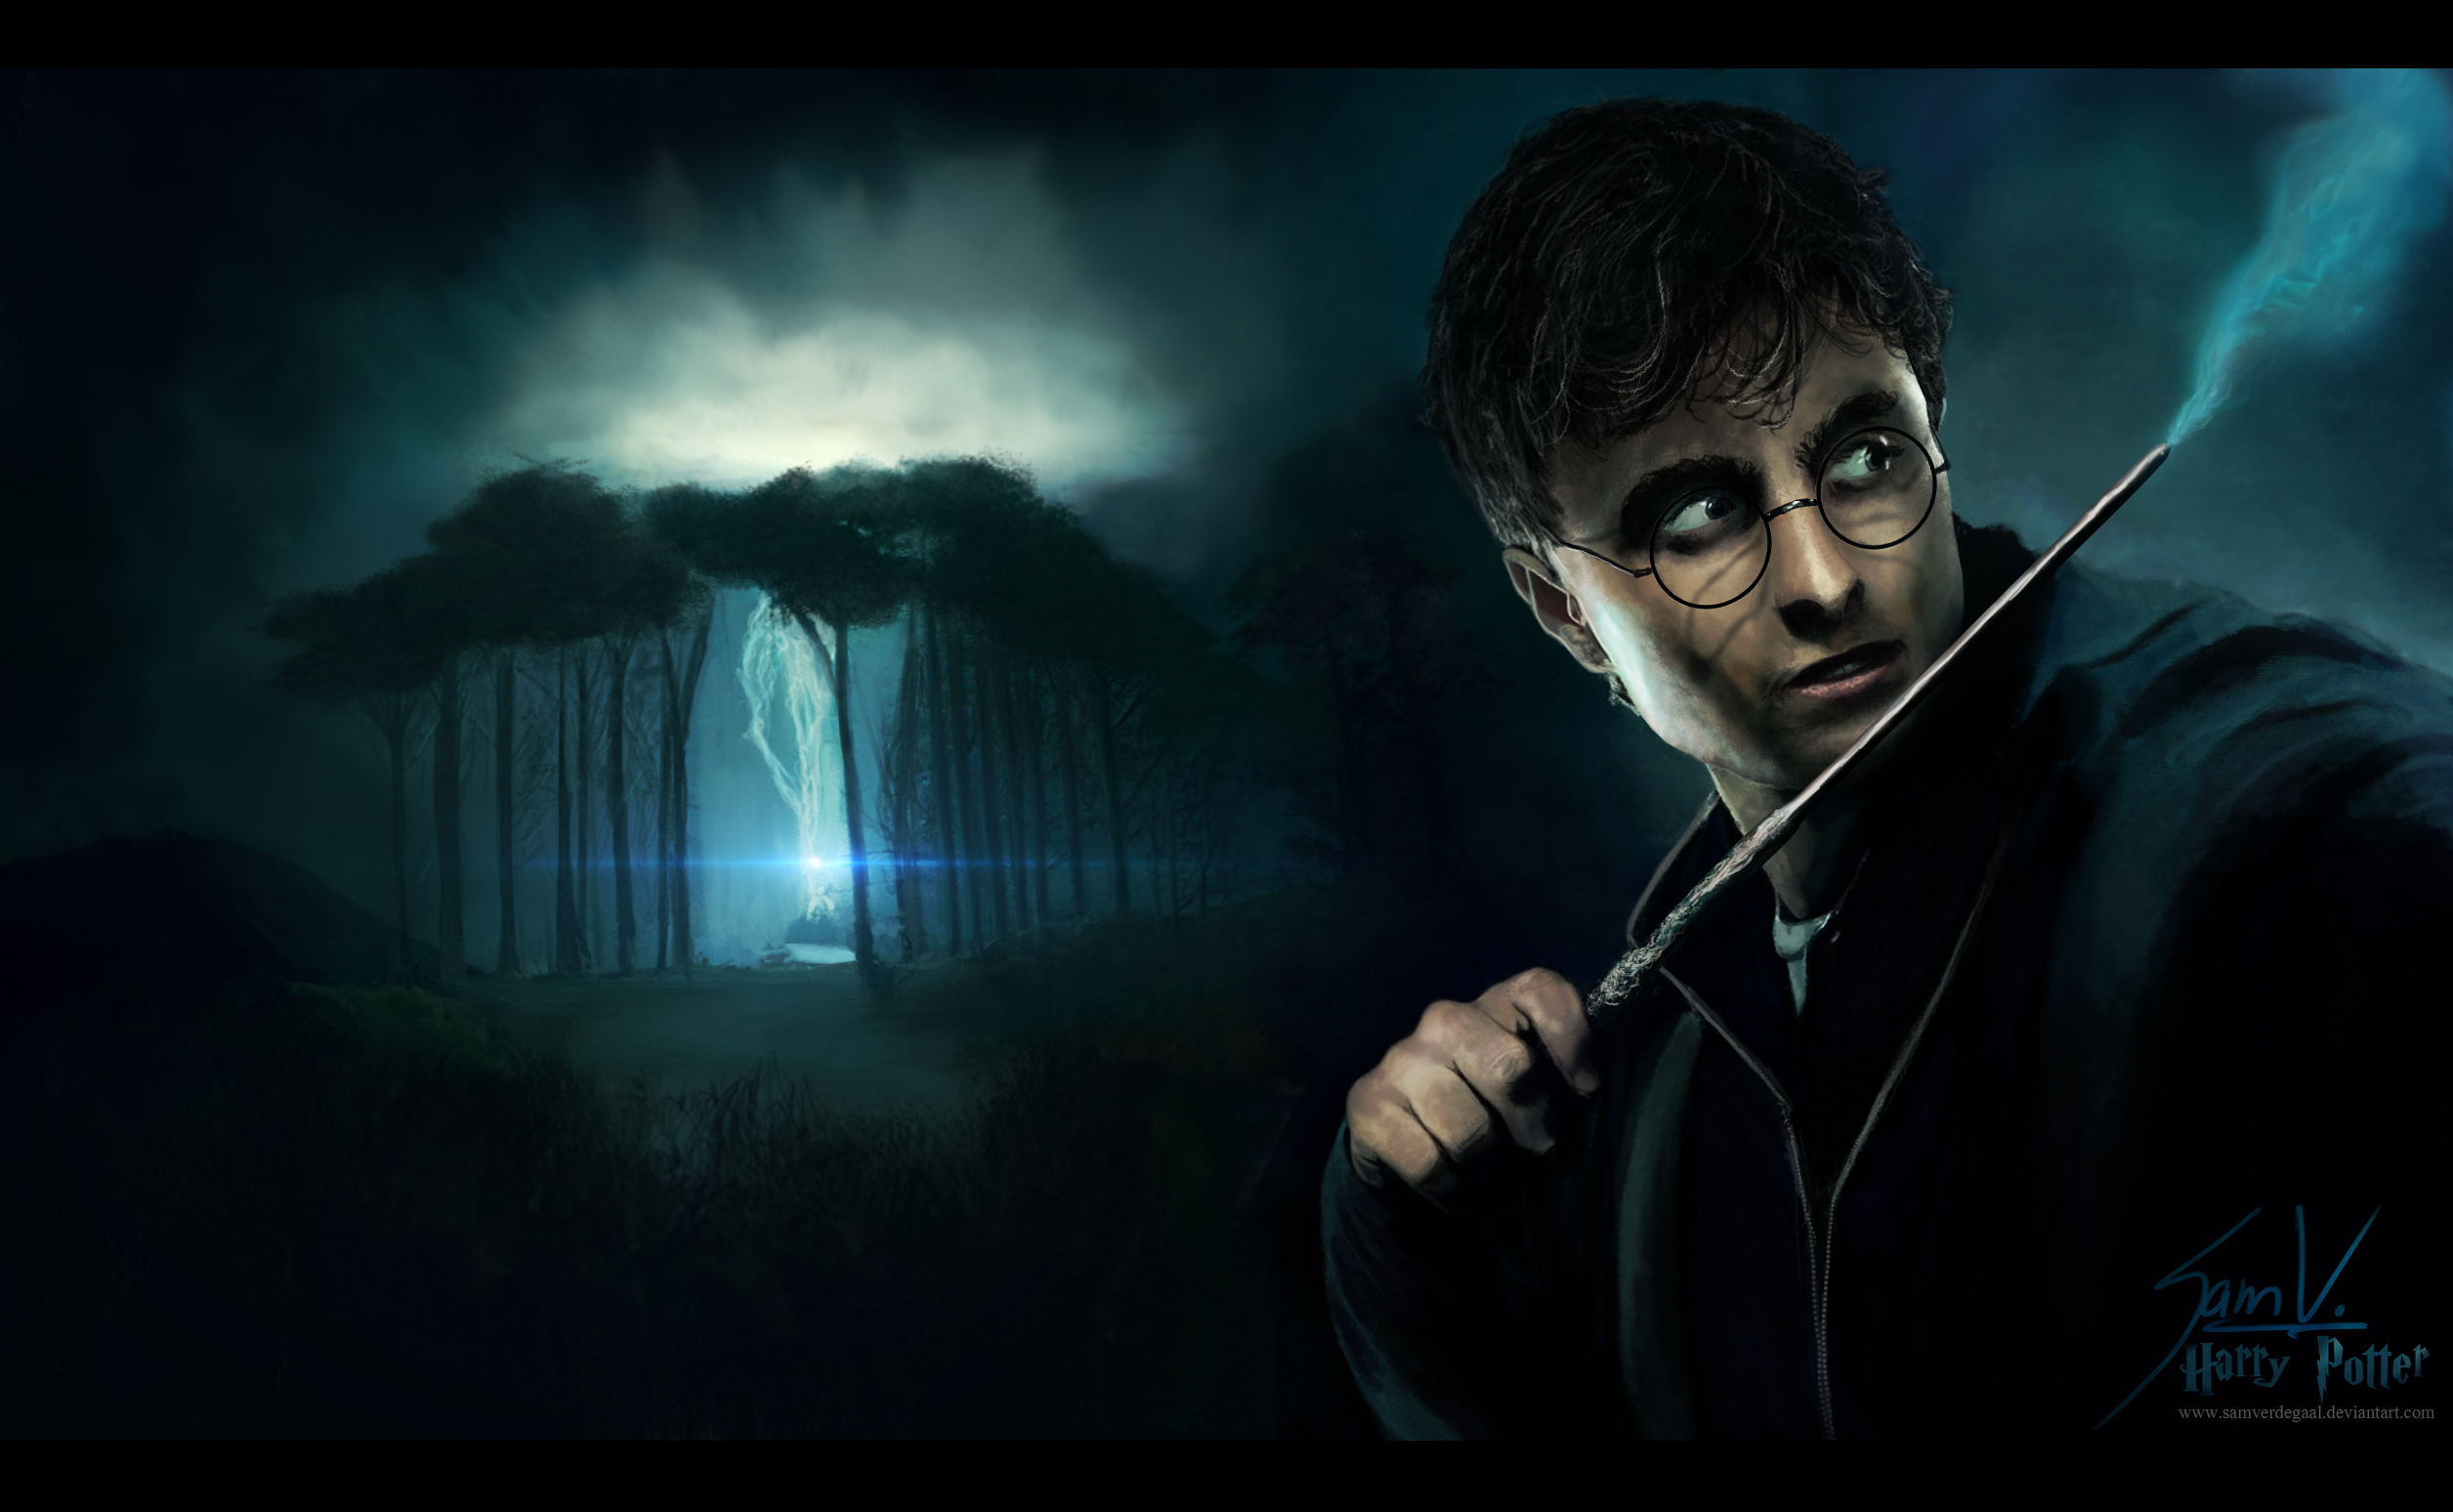 Harry Potter - Wallpaper by SamVerdegaal on DeviantArt